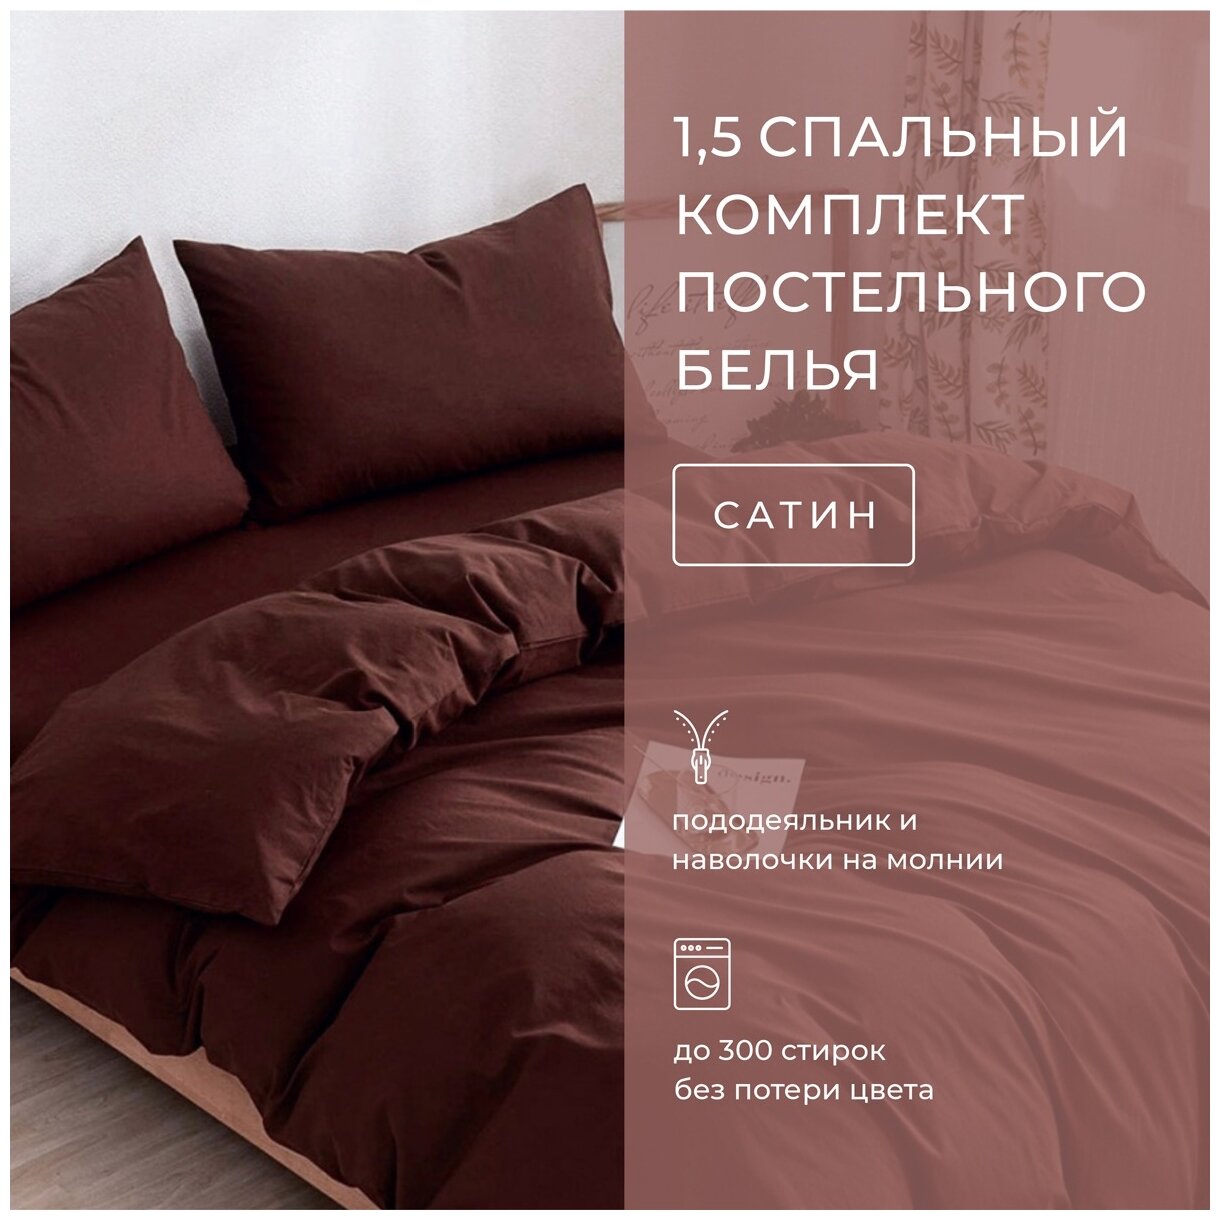 Комплект постельного белья Grazia-Textile 1,5 спальный коричневый, Сатин, наволочки 70x70 2 шт. - фотография № 2